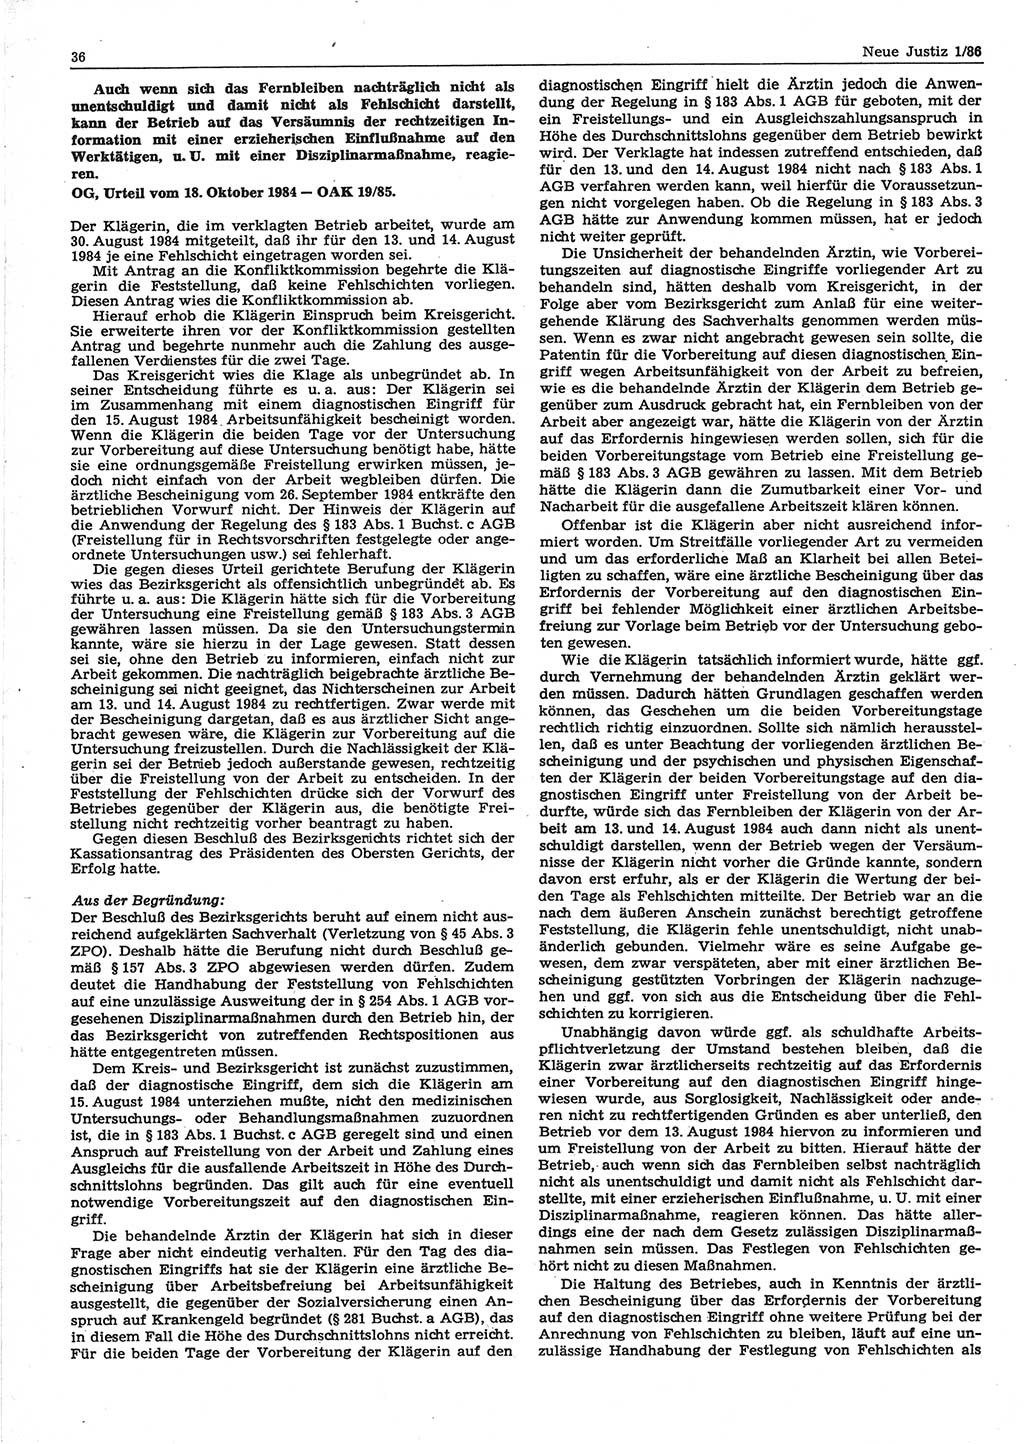 Neue Justiz (NJ), Zeitschrift für sozialistisches Recht und Gesetzlichkeit [Deutsche Demokratische Republik (DDR)], 40. Jahrgang 1986, Seite 36 (NJ DDR 1986, S. 36)